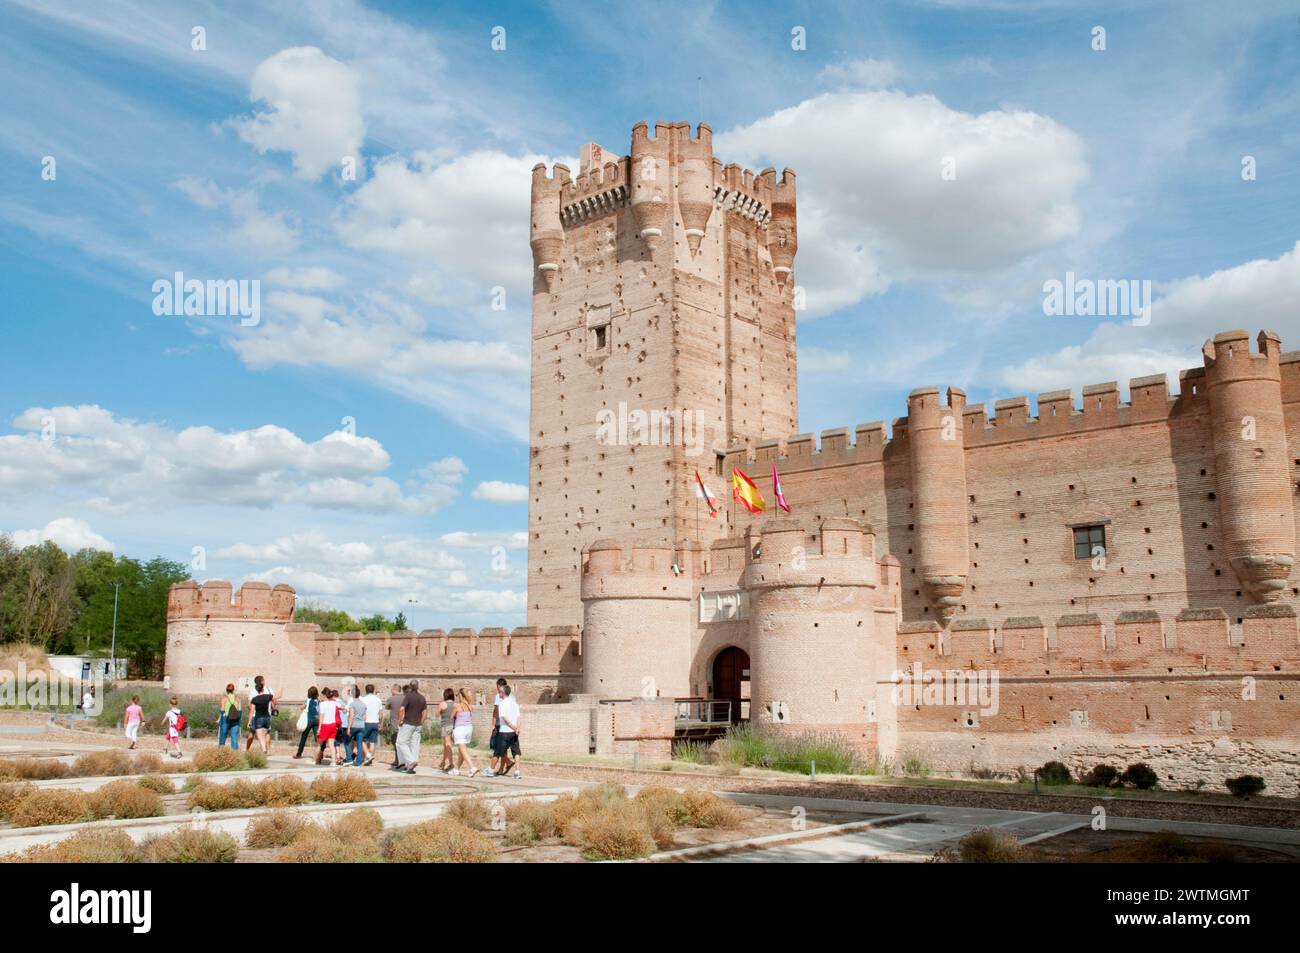 La Mota castle. Medina del Campo, Valladolid province, Castilla Leon, Spain. Stock Photo